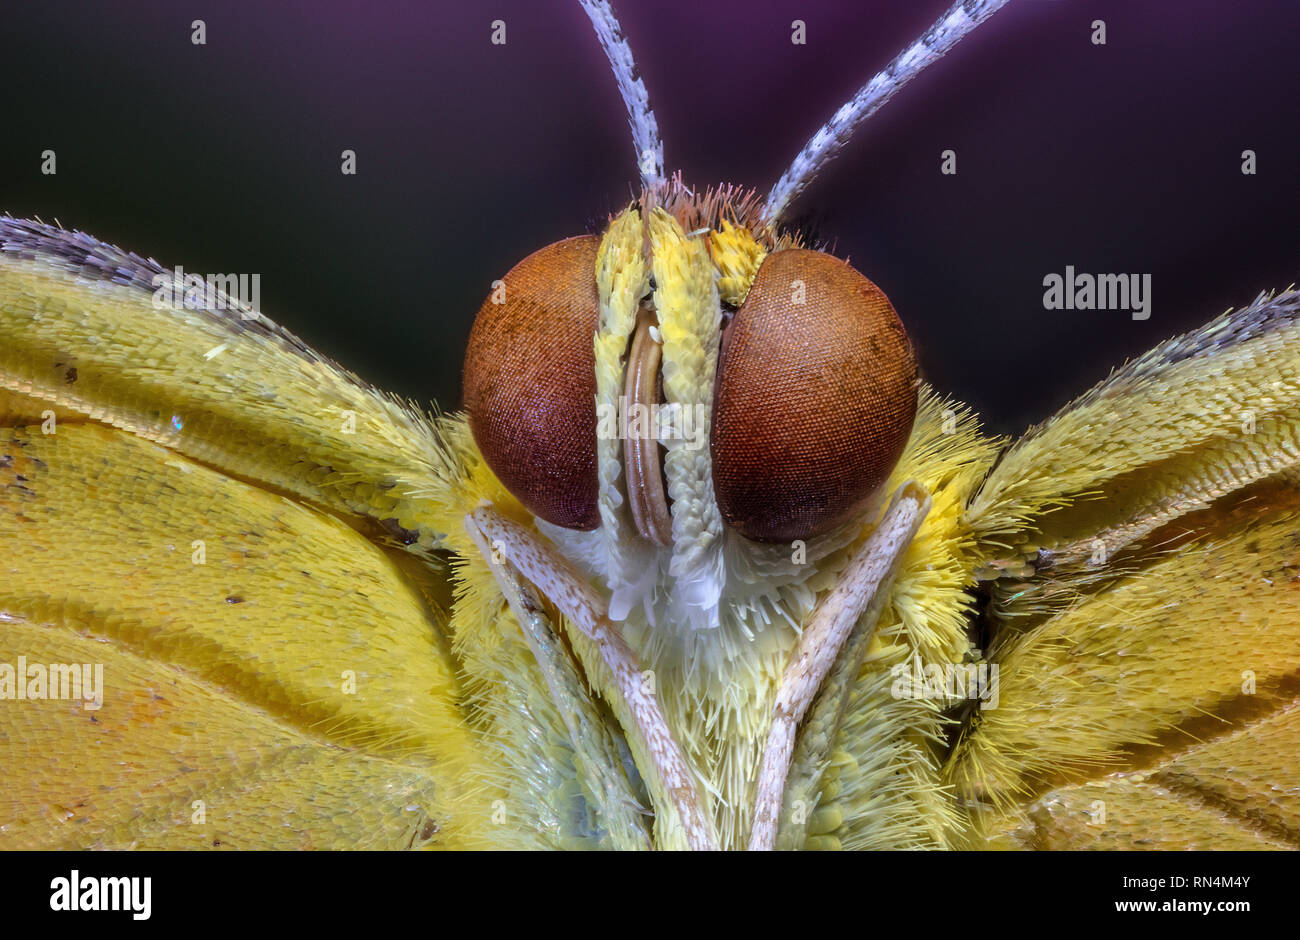 Sleepy Orange Butterfly Extreme Close-Up Stock Photo